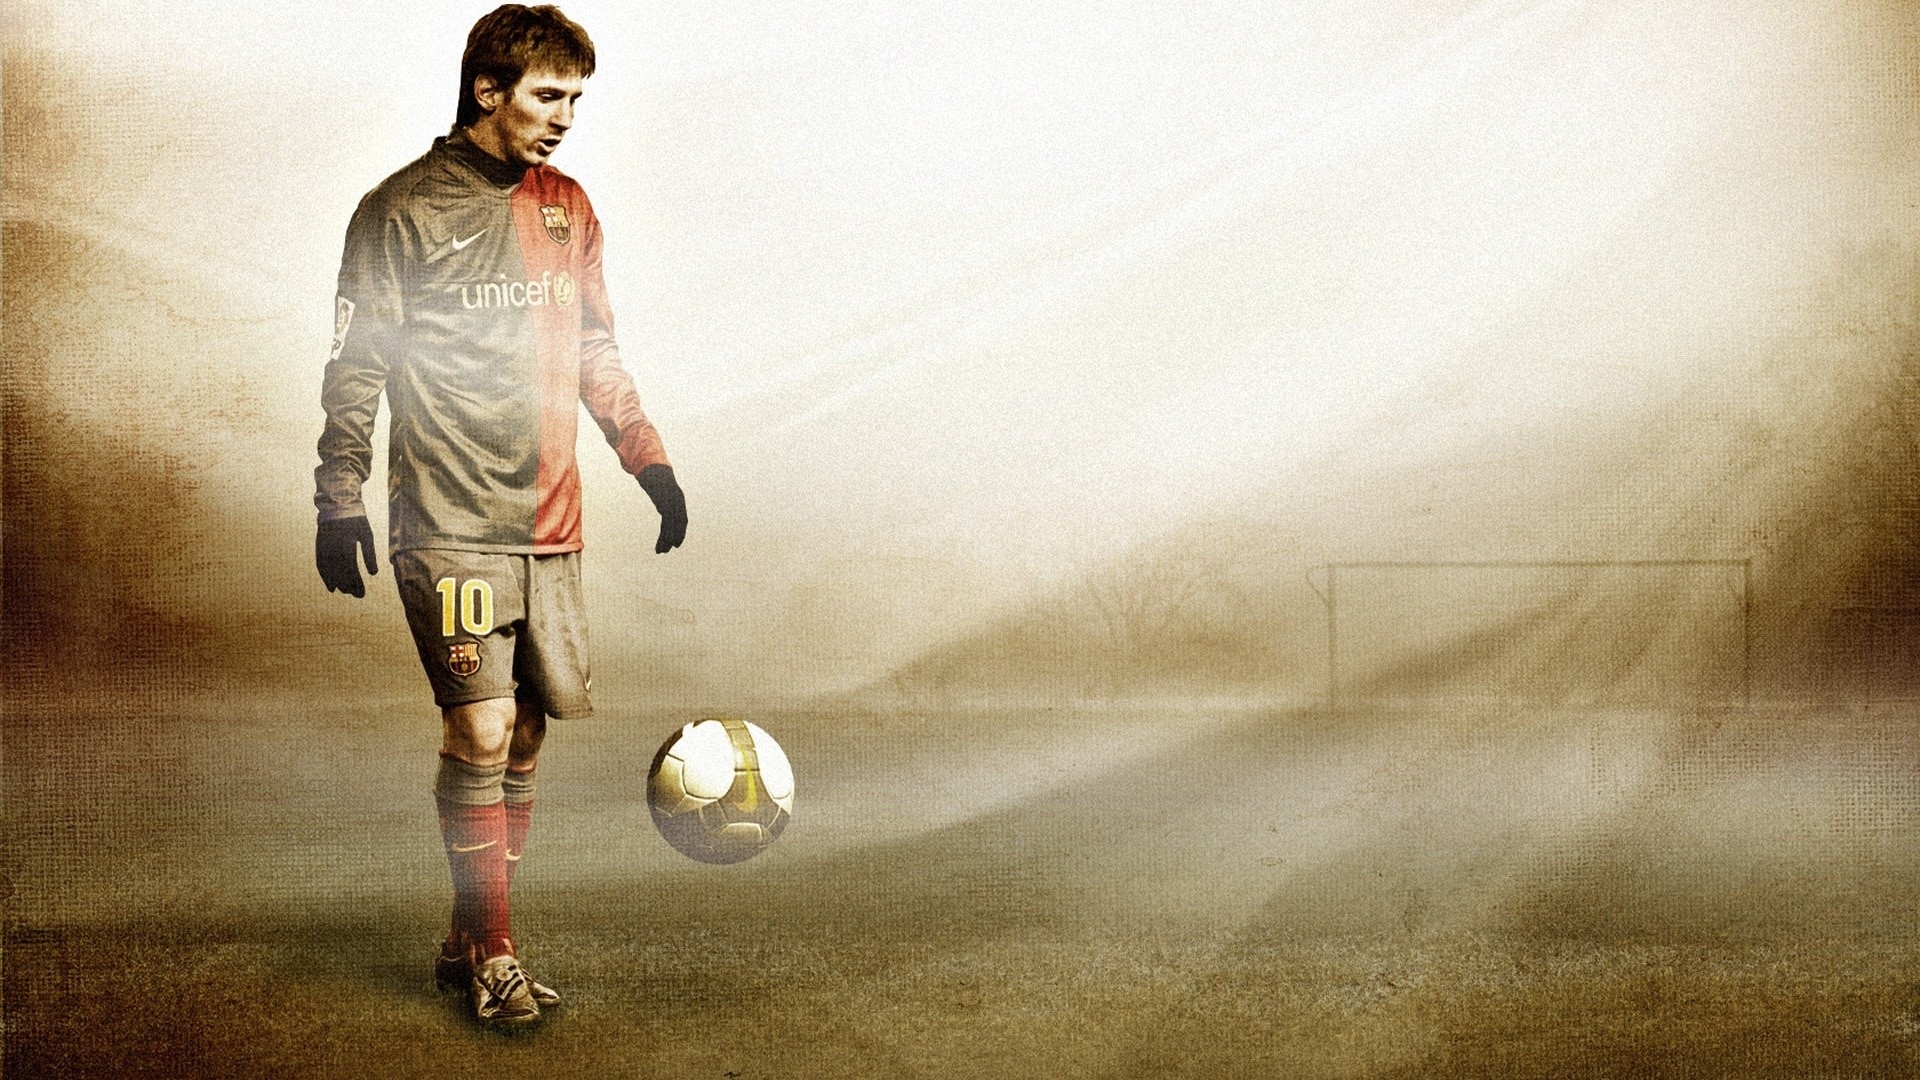 Background Full Hd 1080p - Hd Wallpaper Leo Messi - HD Wallpaper 